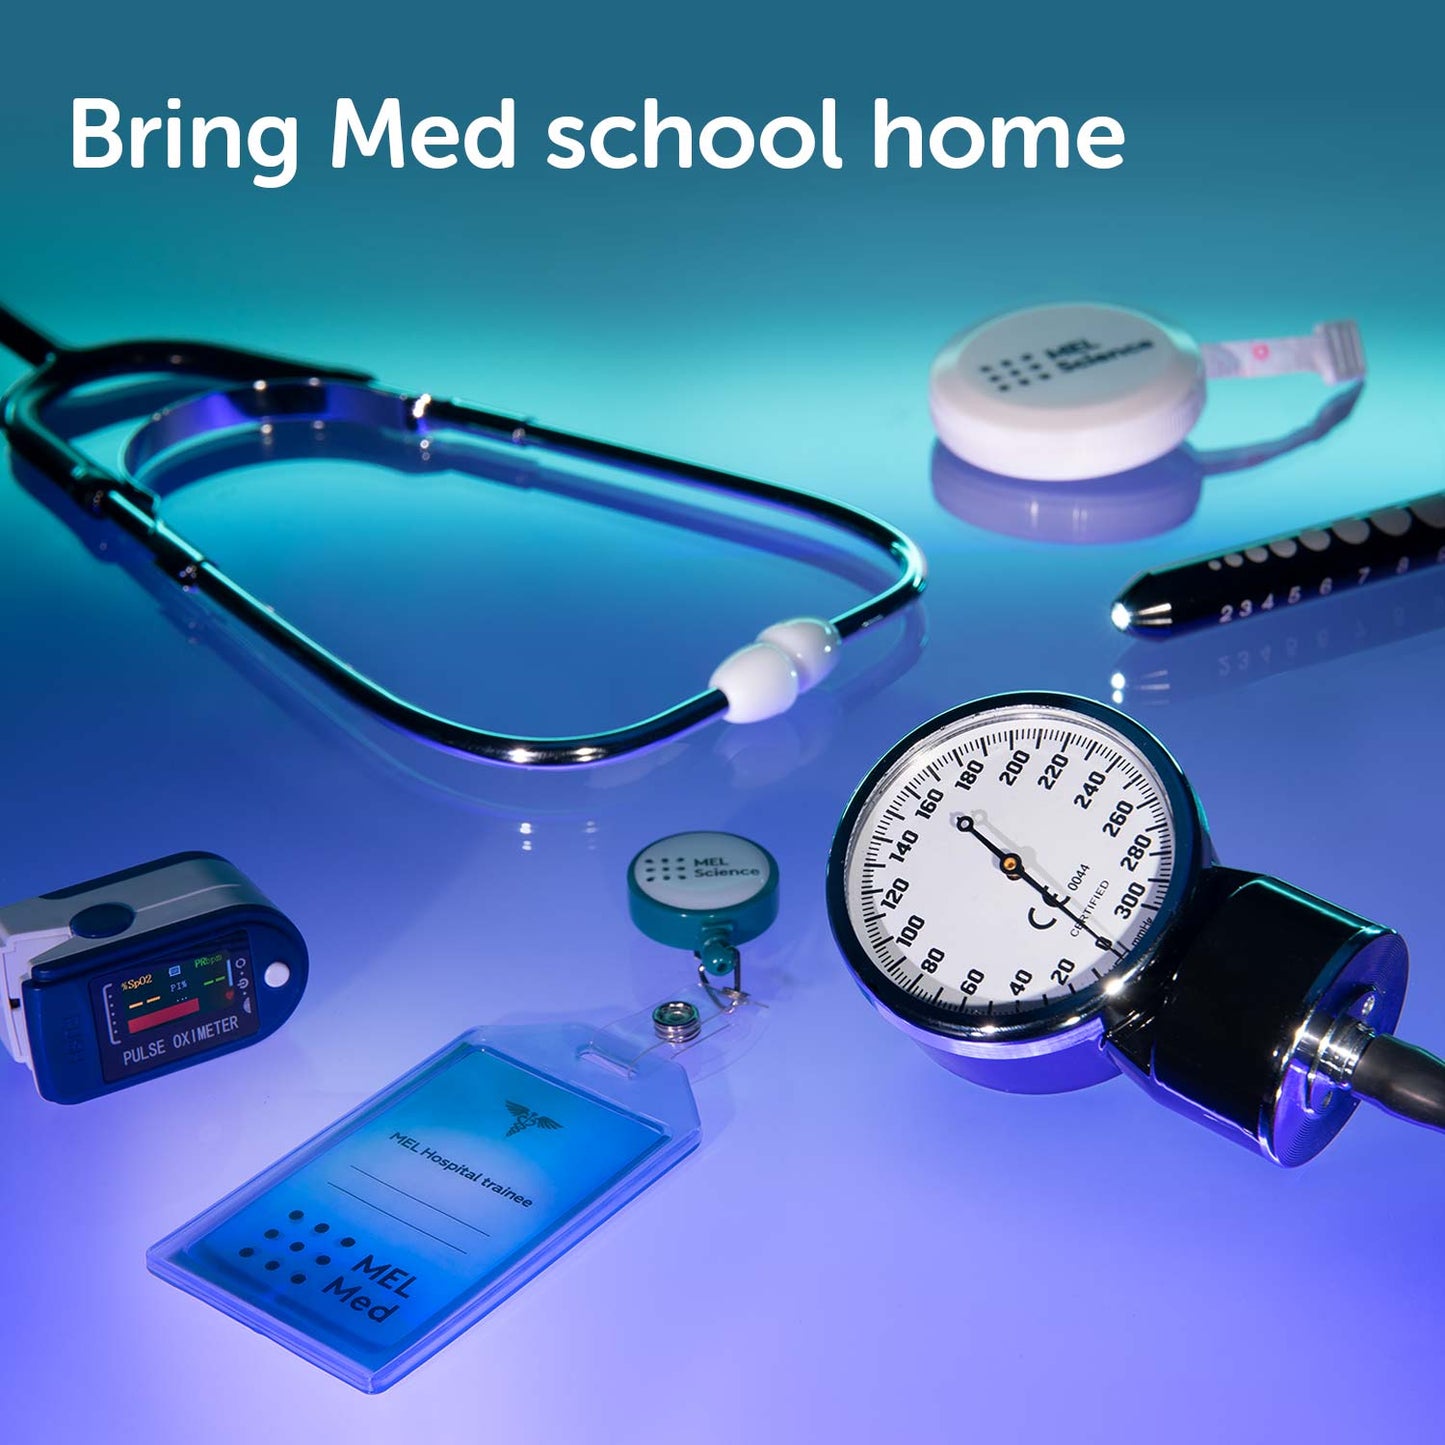 MEL Med bundle — 2 kits. Ages 14+